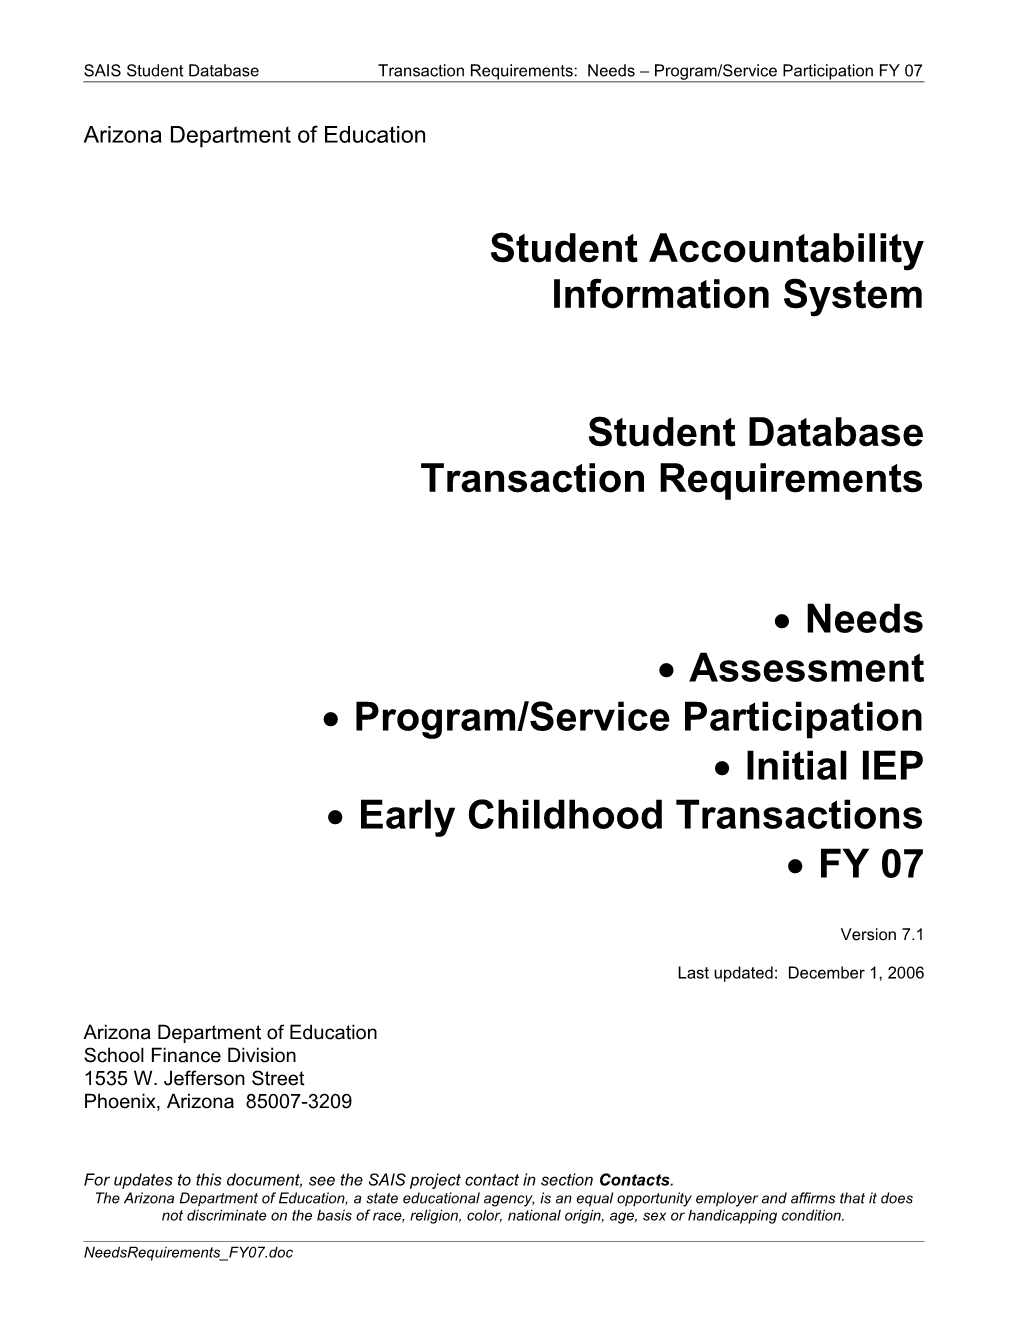 SAIS Student Databasetransaction Requirements: Needs Program/Service Participation FY 07